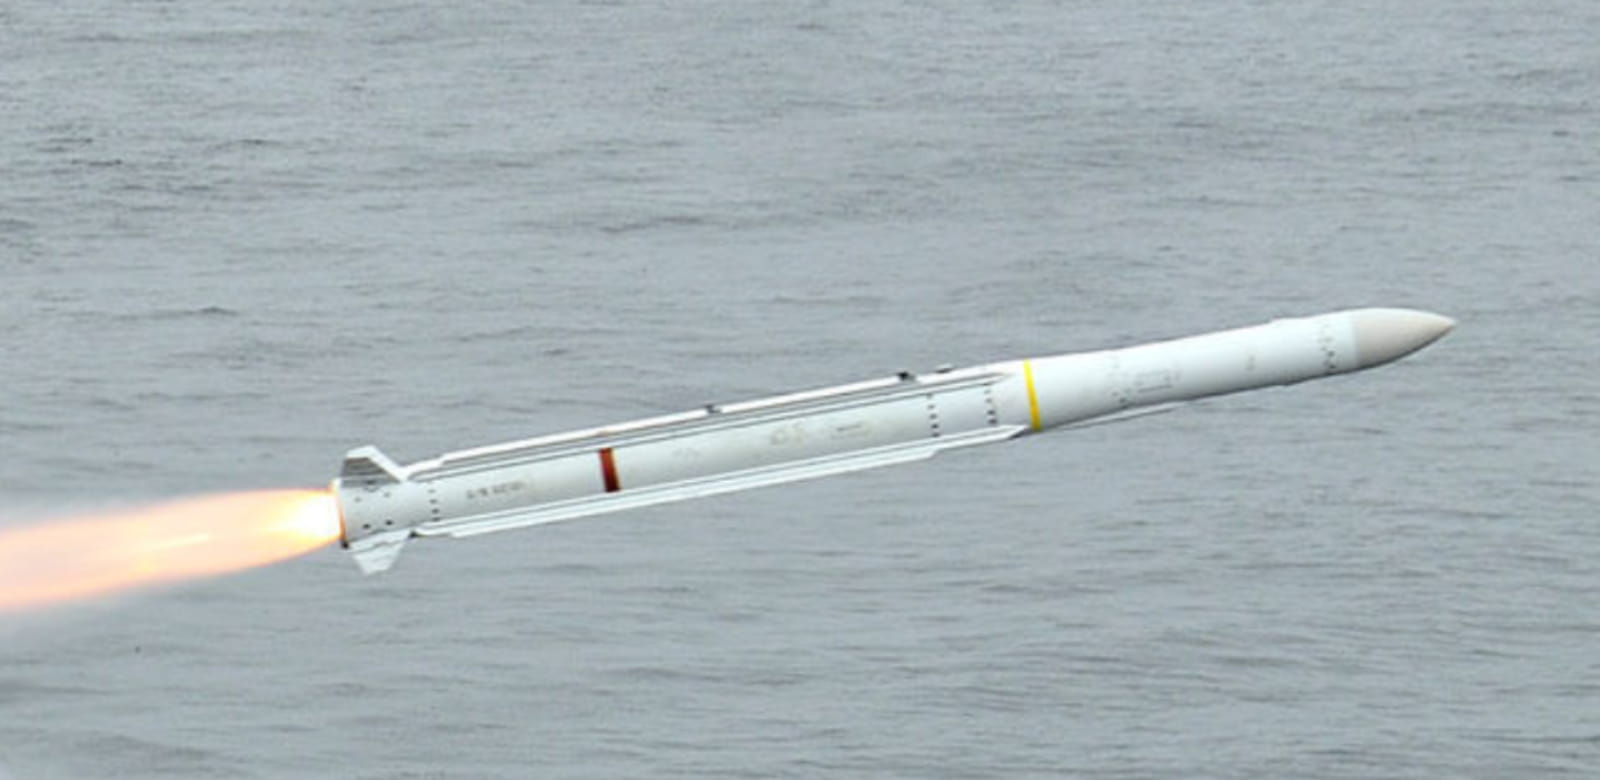 The ESSM missile.